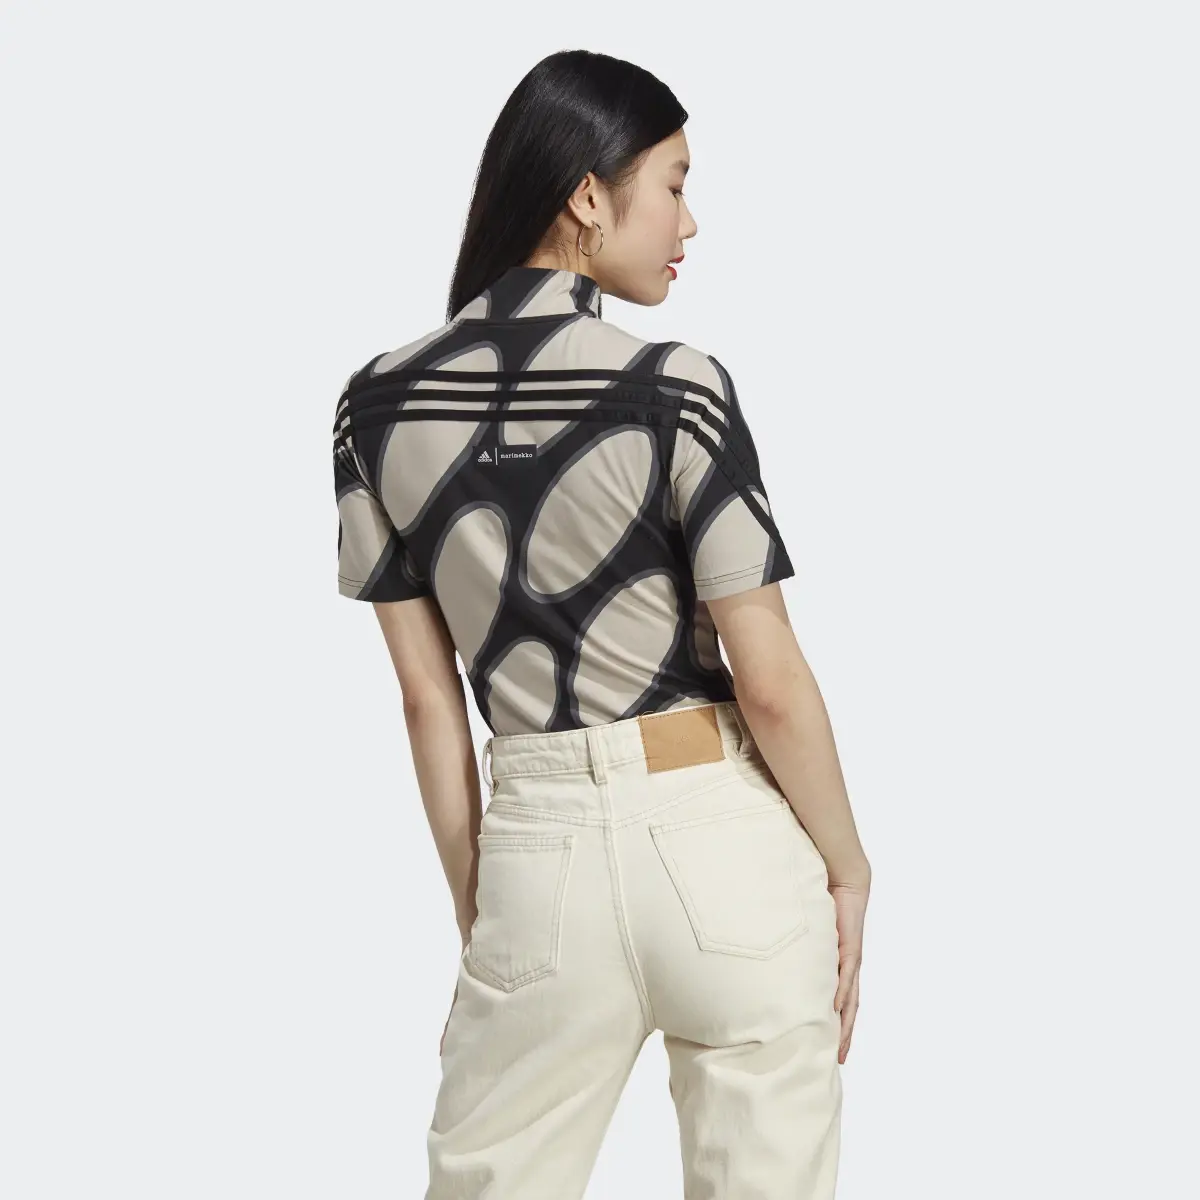 Adidas x Marimekko Future Icons Three Stripes Body. 3